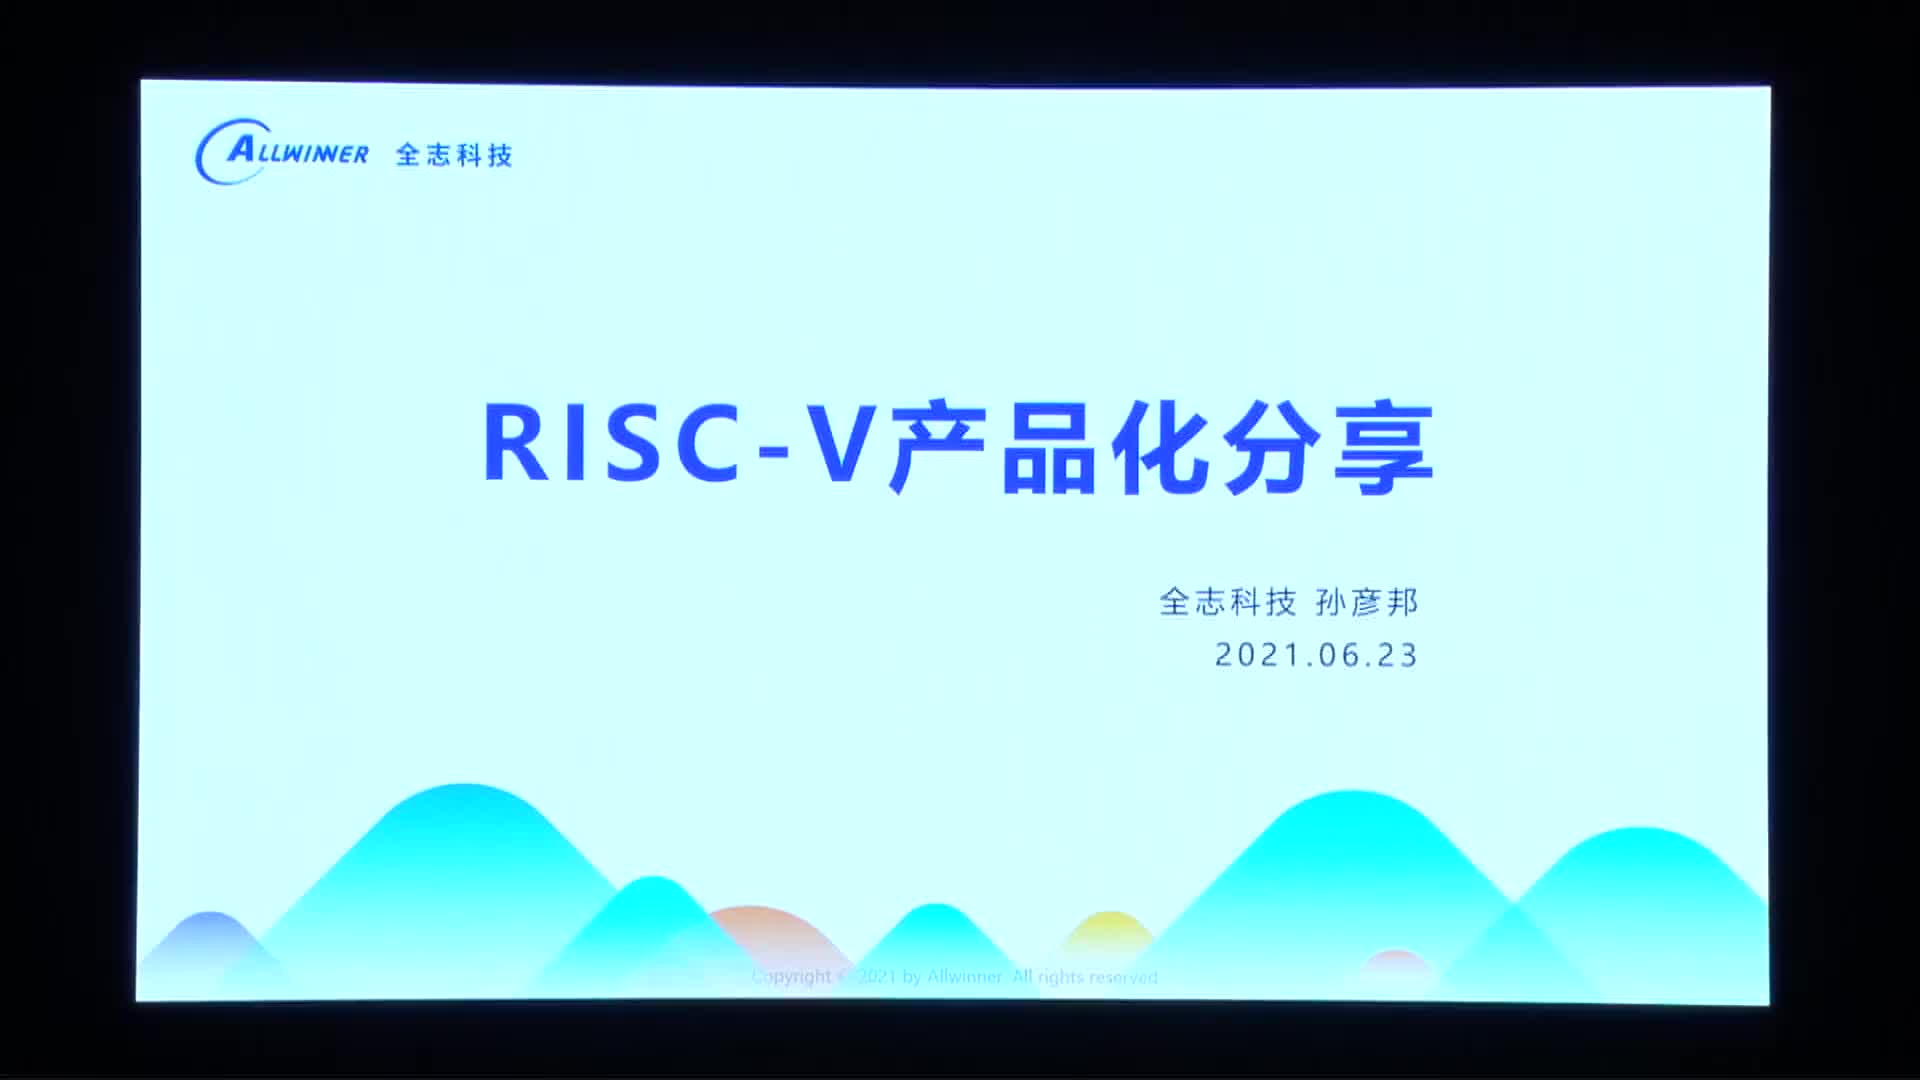 孙彦邦@全志科技 - RISC-V 产品化分享 - 第一届 RISC-V 中国峰会_batch